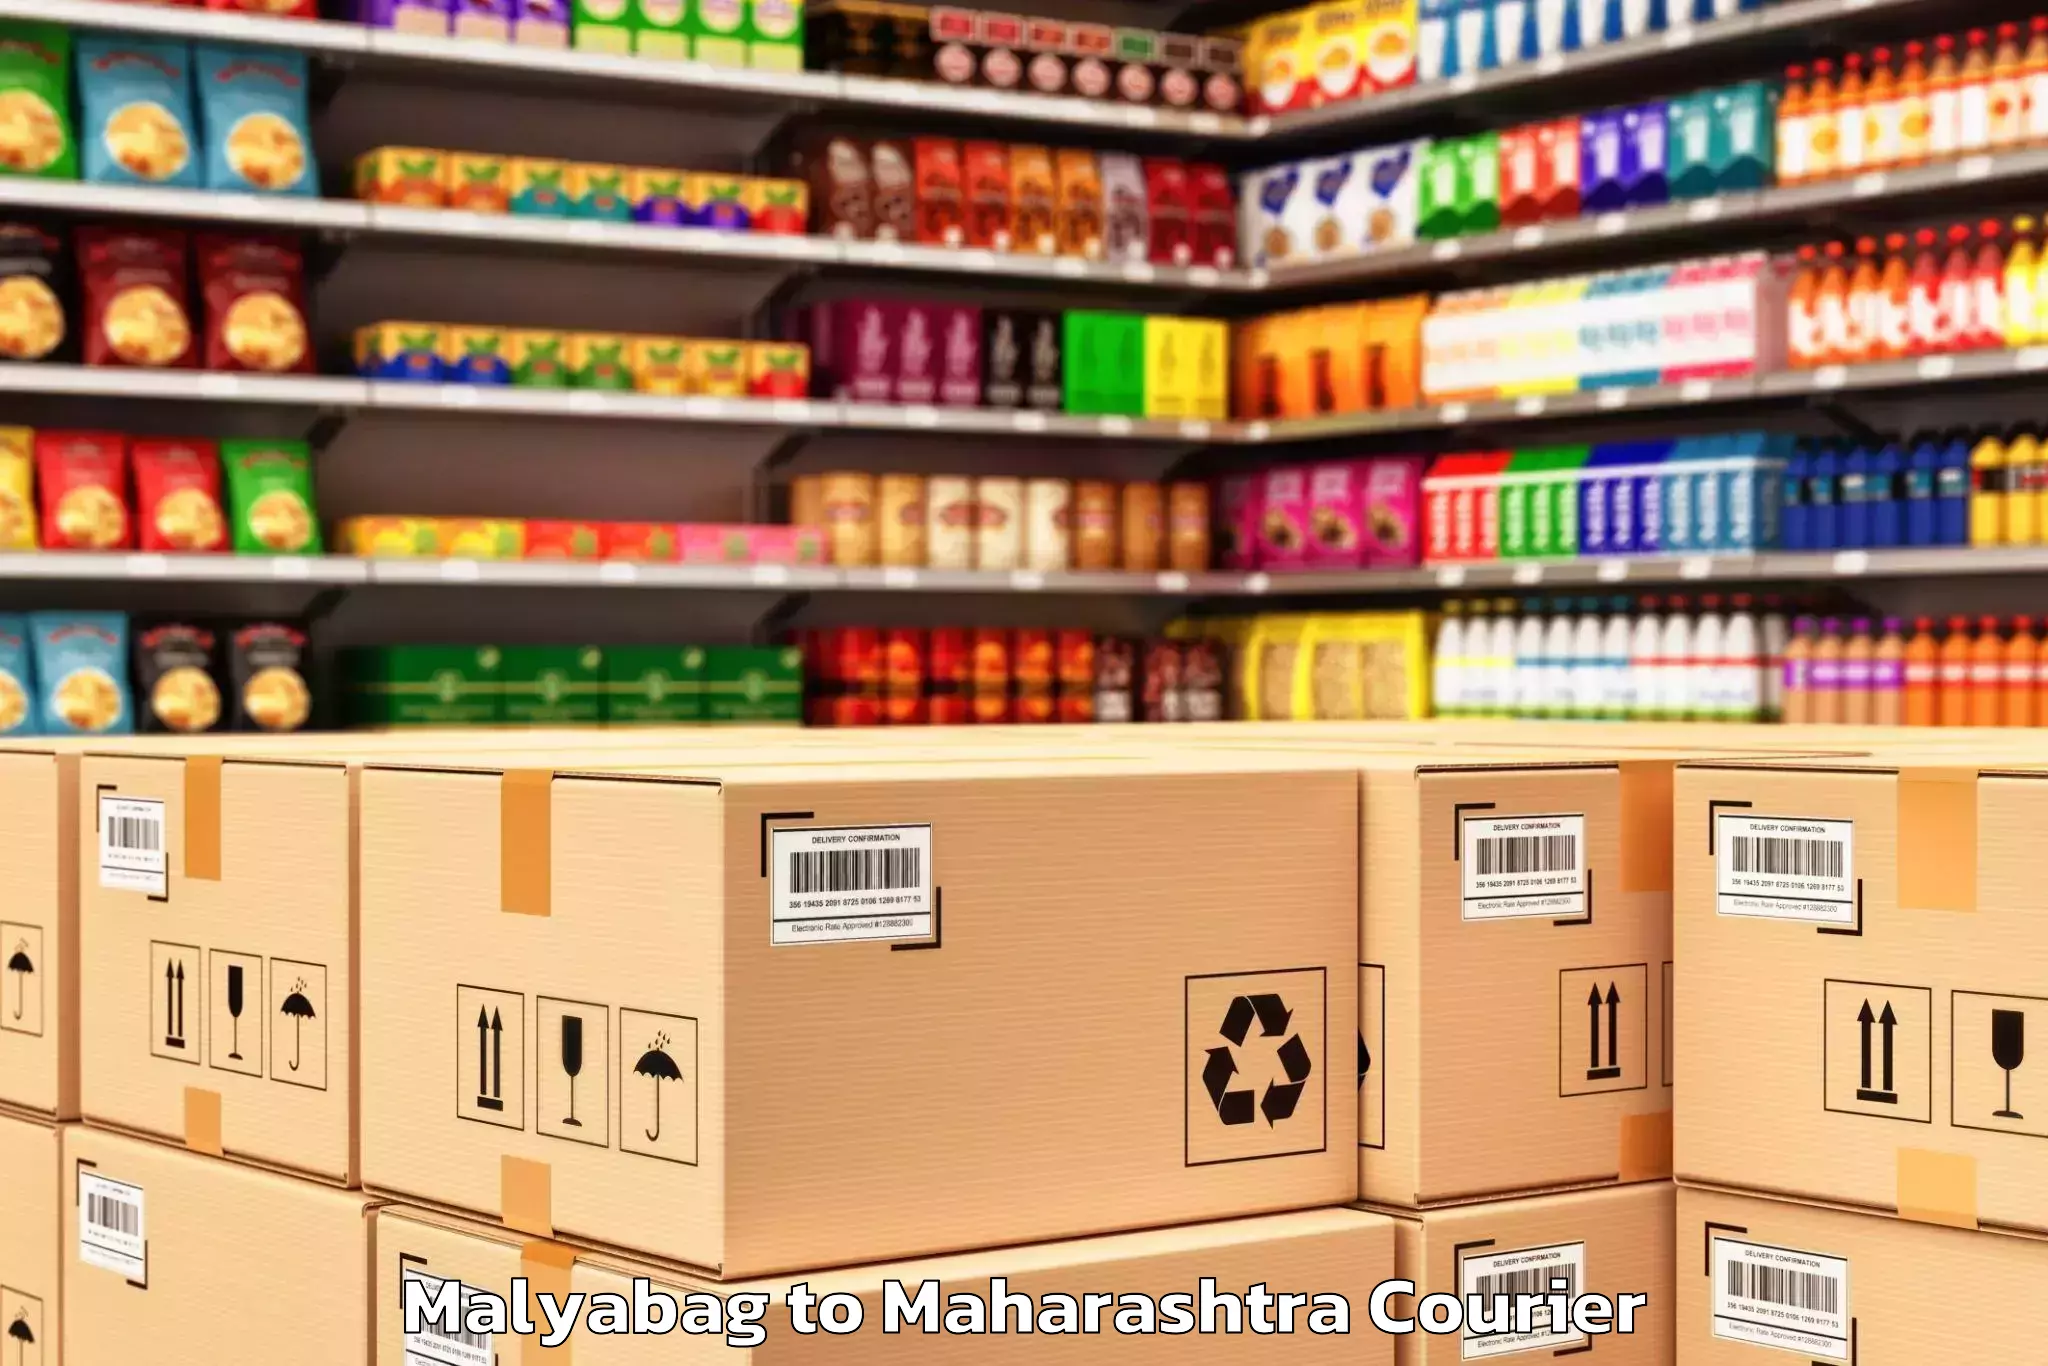 Specialized moving company Malyabag to Maharashtra